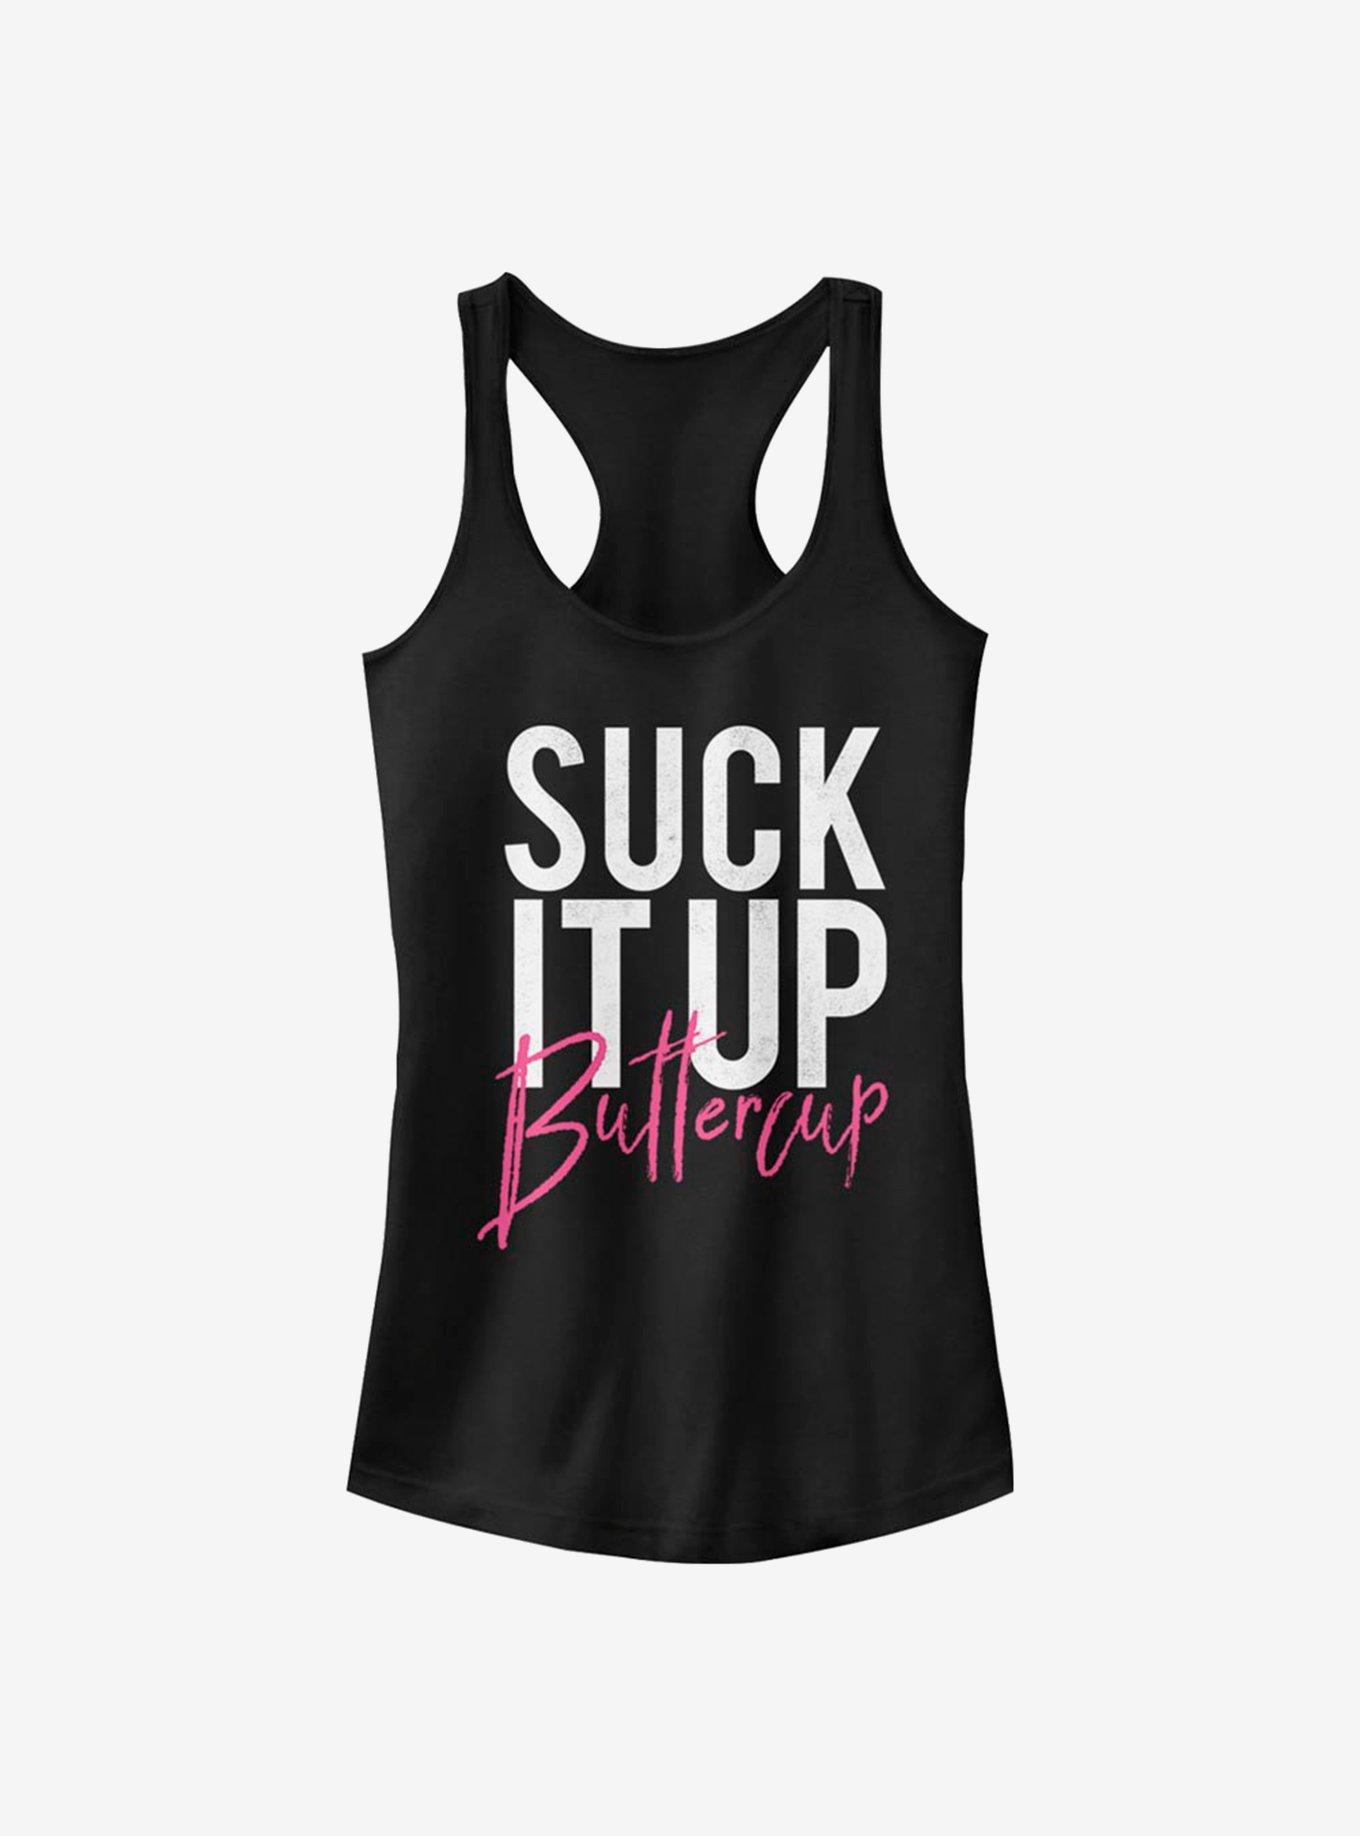 Suck It Up Buttercup Girls Tank